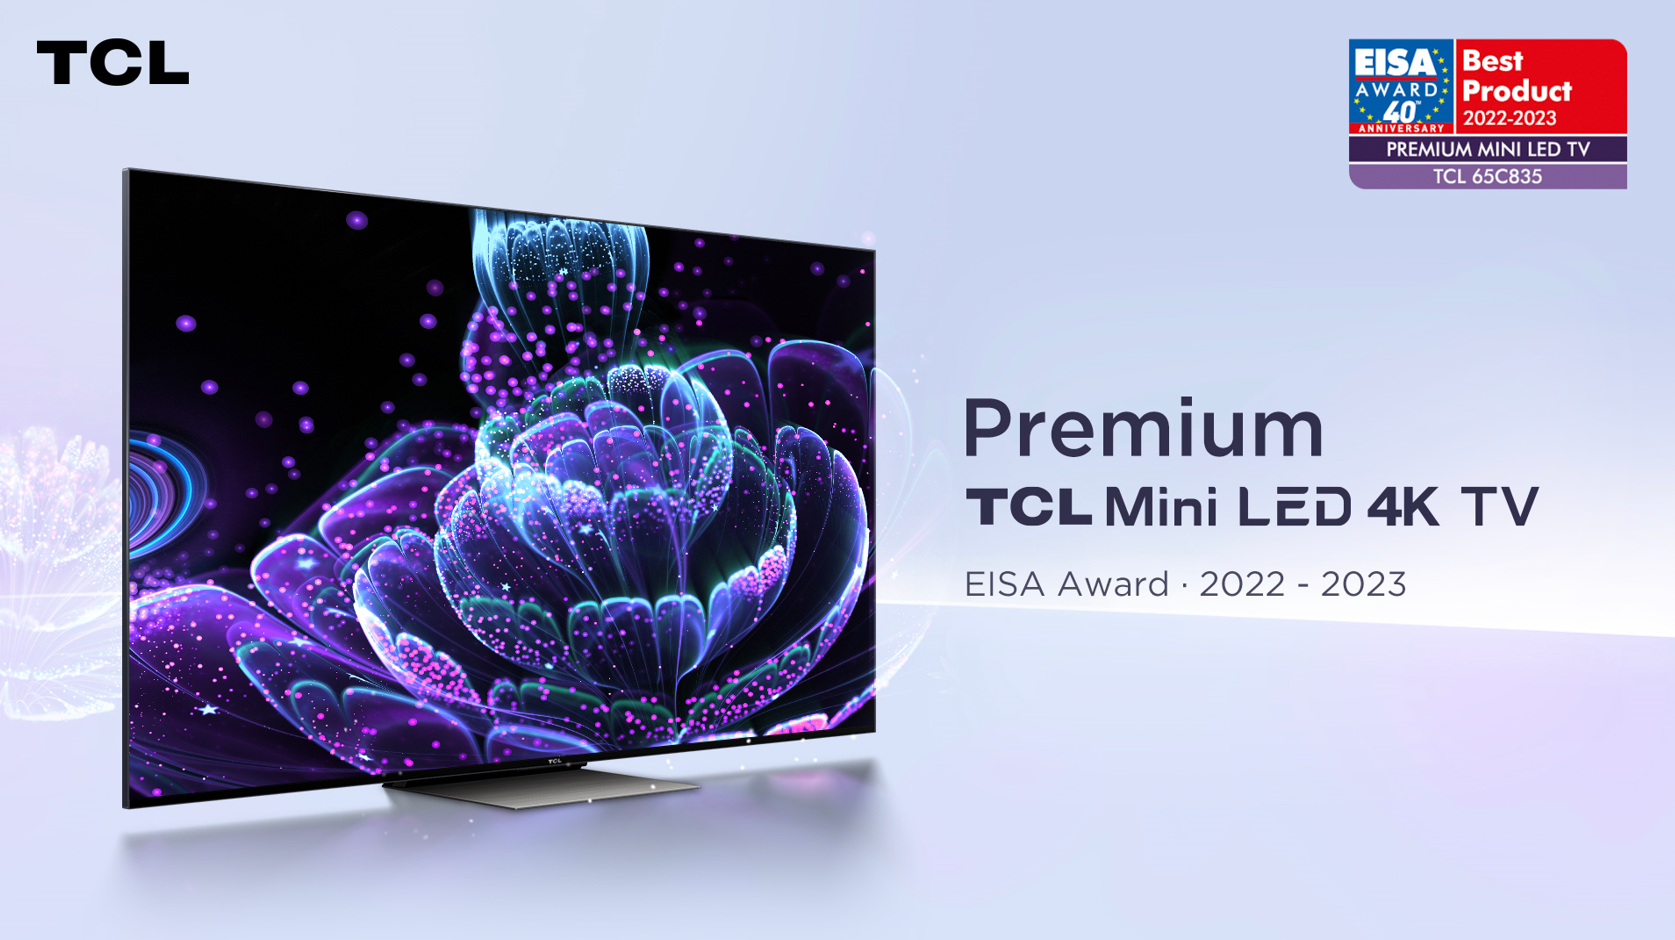 EISA PREMIUM MINI LED TV 2022-2023